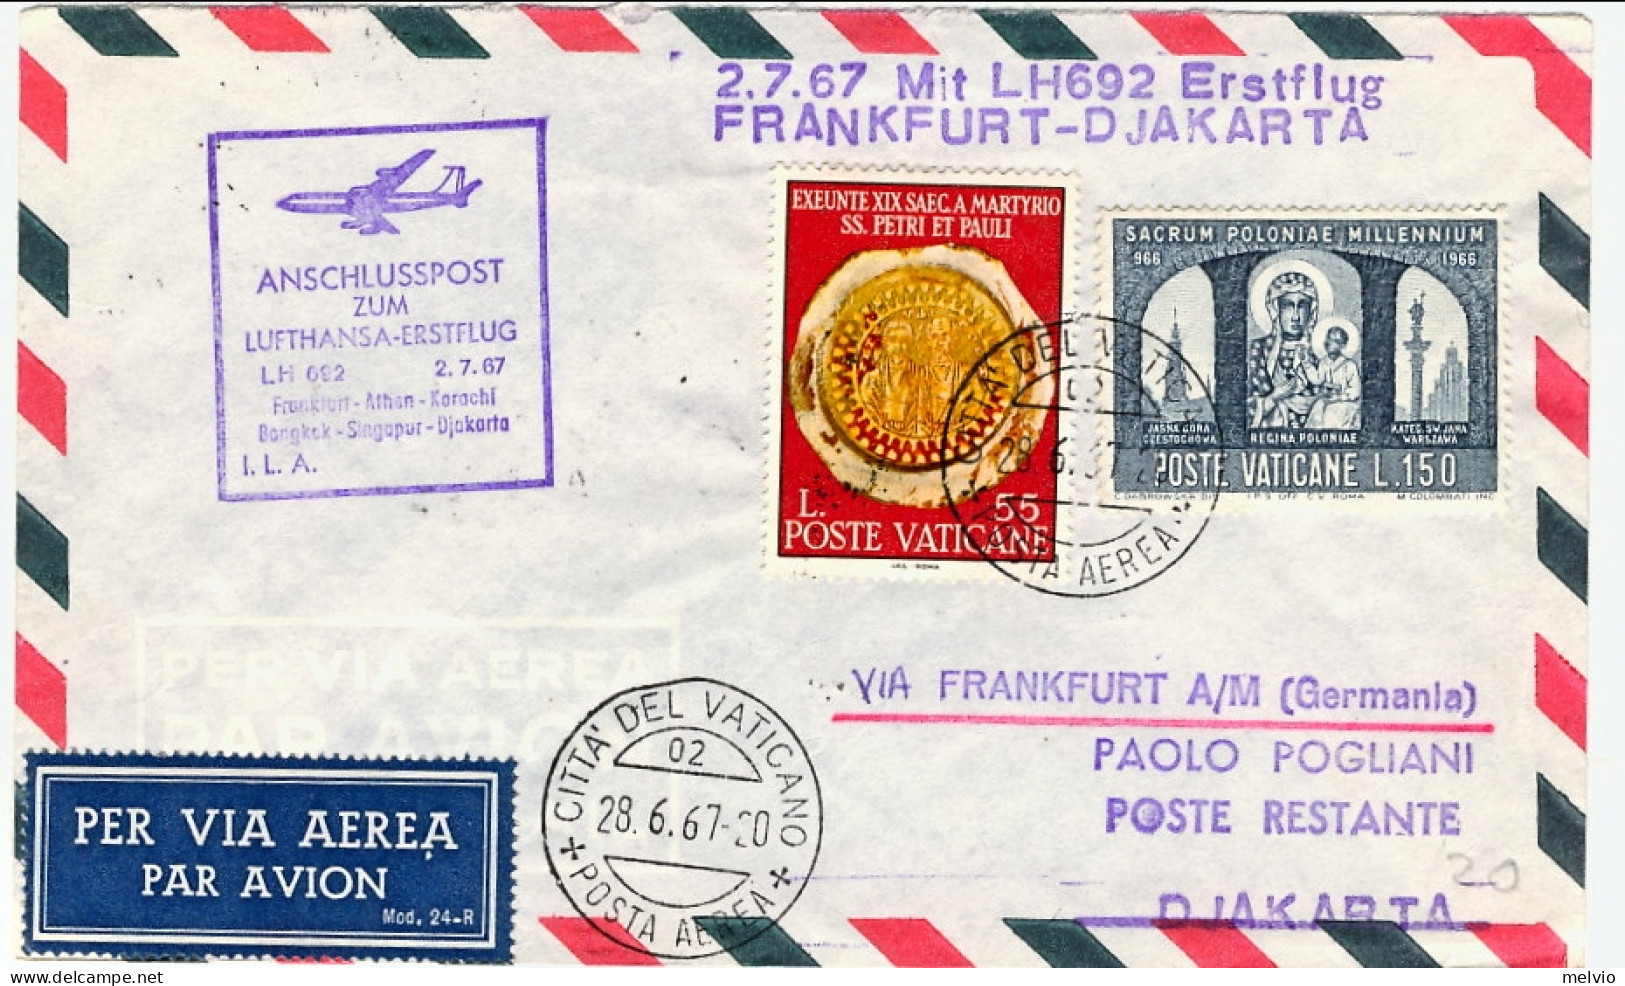 Vaticano-1967 Lufthansa I^volo Francoforte Djakarta Del 2 Luglio - Airmail